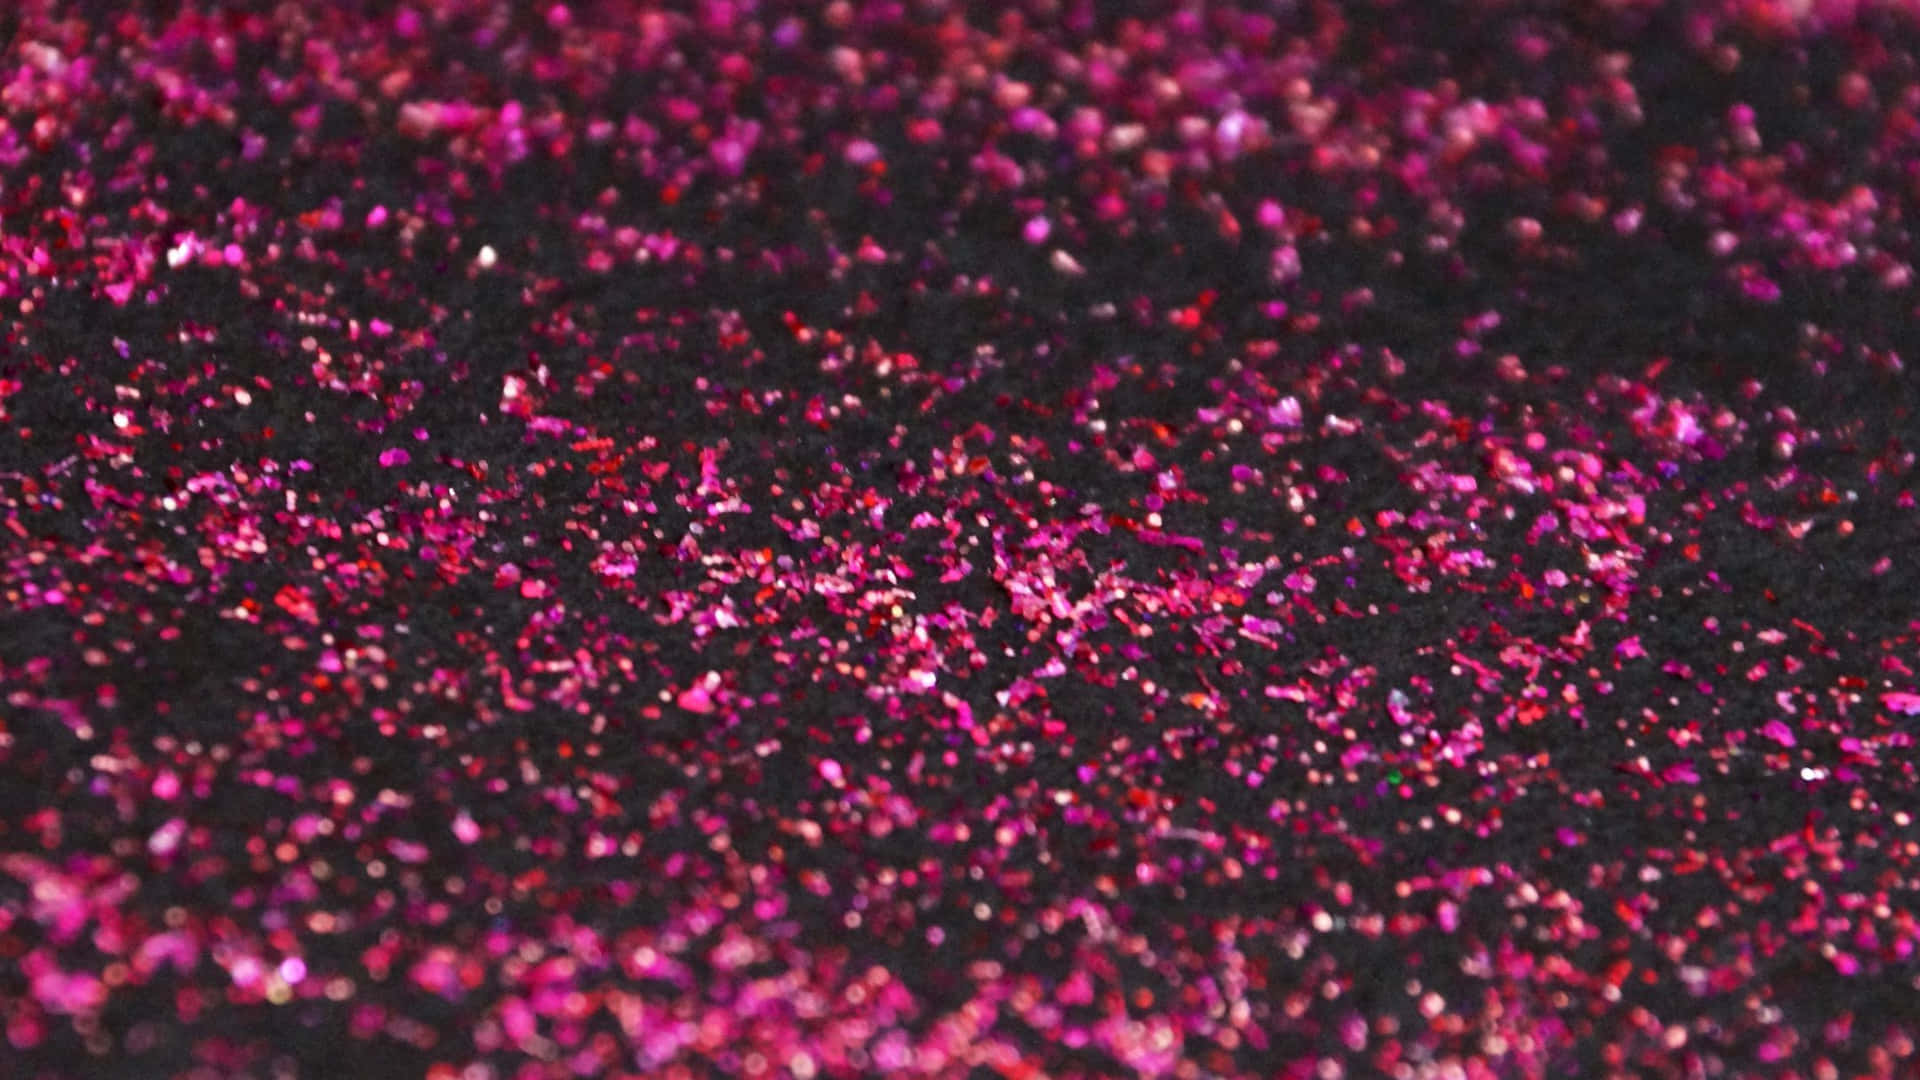 Riccae Setosa Sfumatura Di Rosa Scuro, Che Aggiunge Una Spruzzata Di Colore E Vitalità A Qualsiasi Spazio.